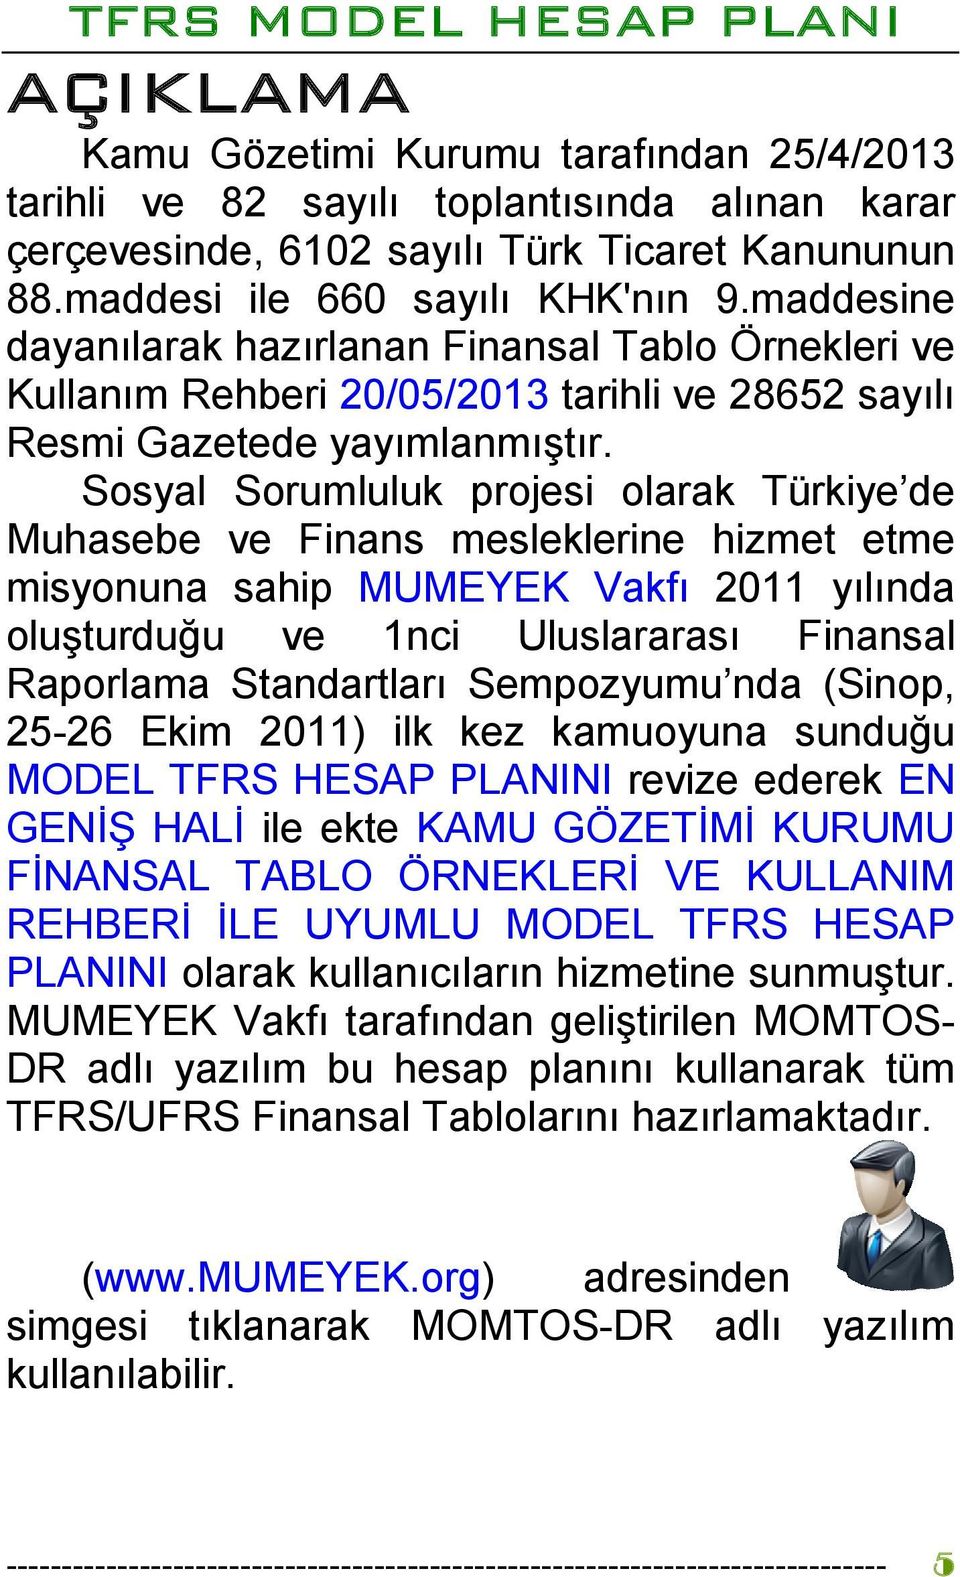 Sosyal Sorumluluk projesi olarak Türkiye de Muhasebe ve Finans mesleklerine hizmet etme misyonuna sahip MUMEYEK Vakfı 2011 yılında oluşturduğu ve 1nci Uluslararası Finansal Raporlama Standartları